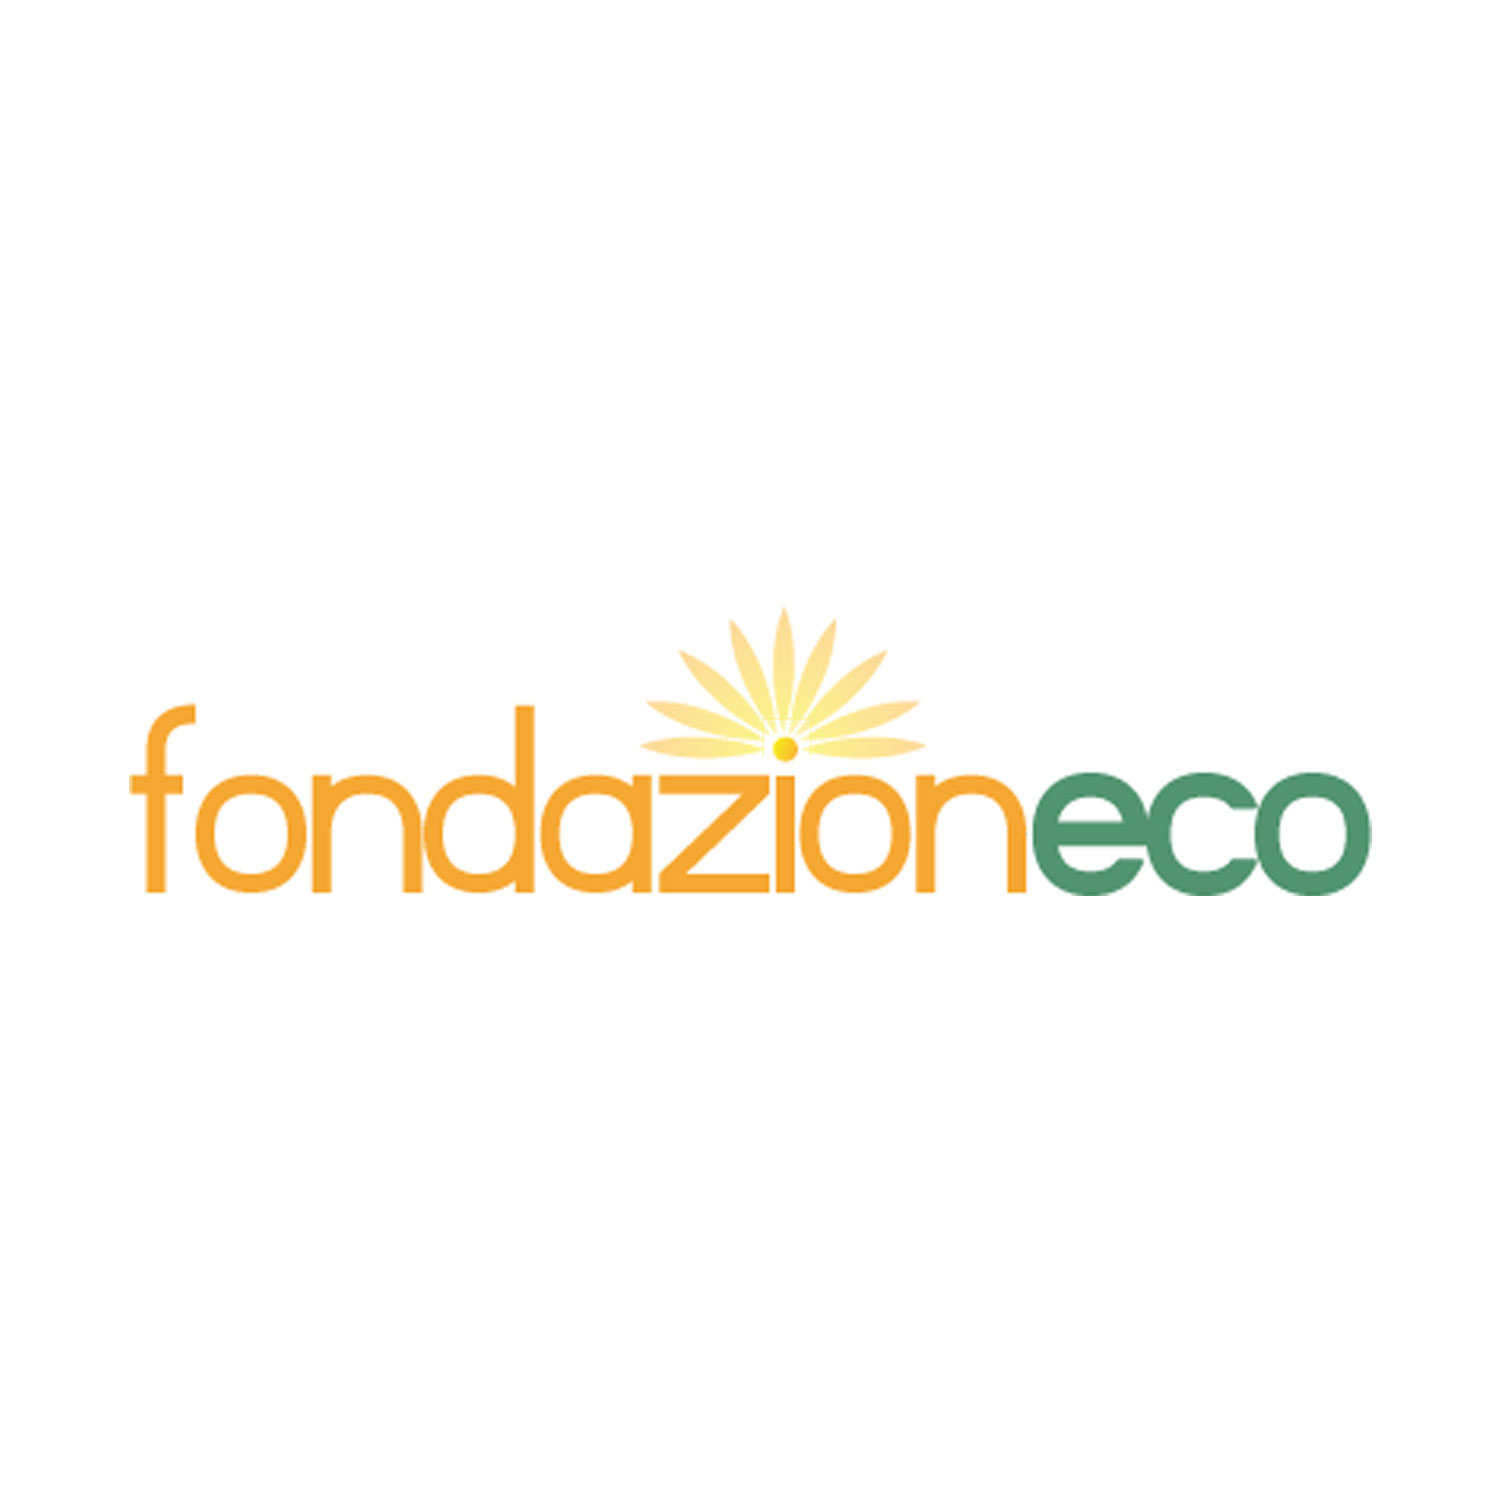 Fondazione Eco